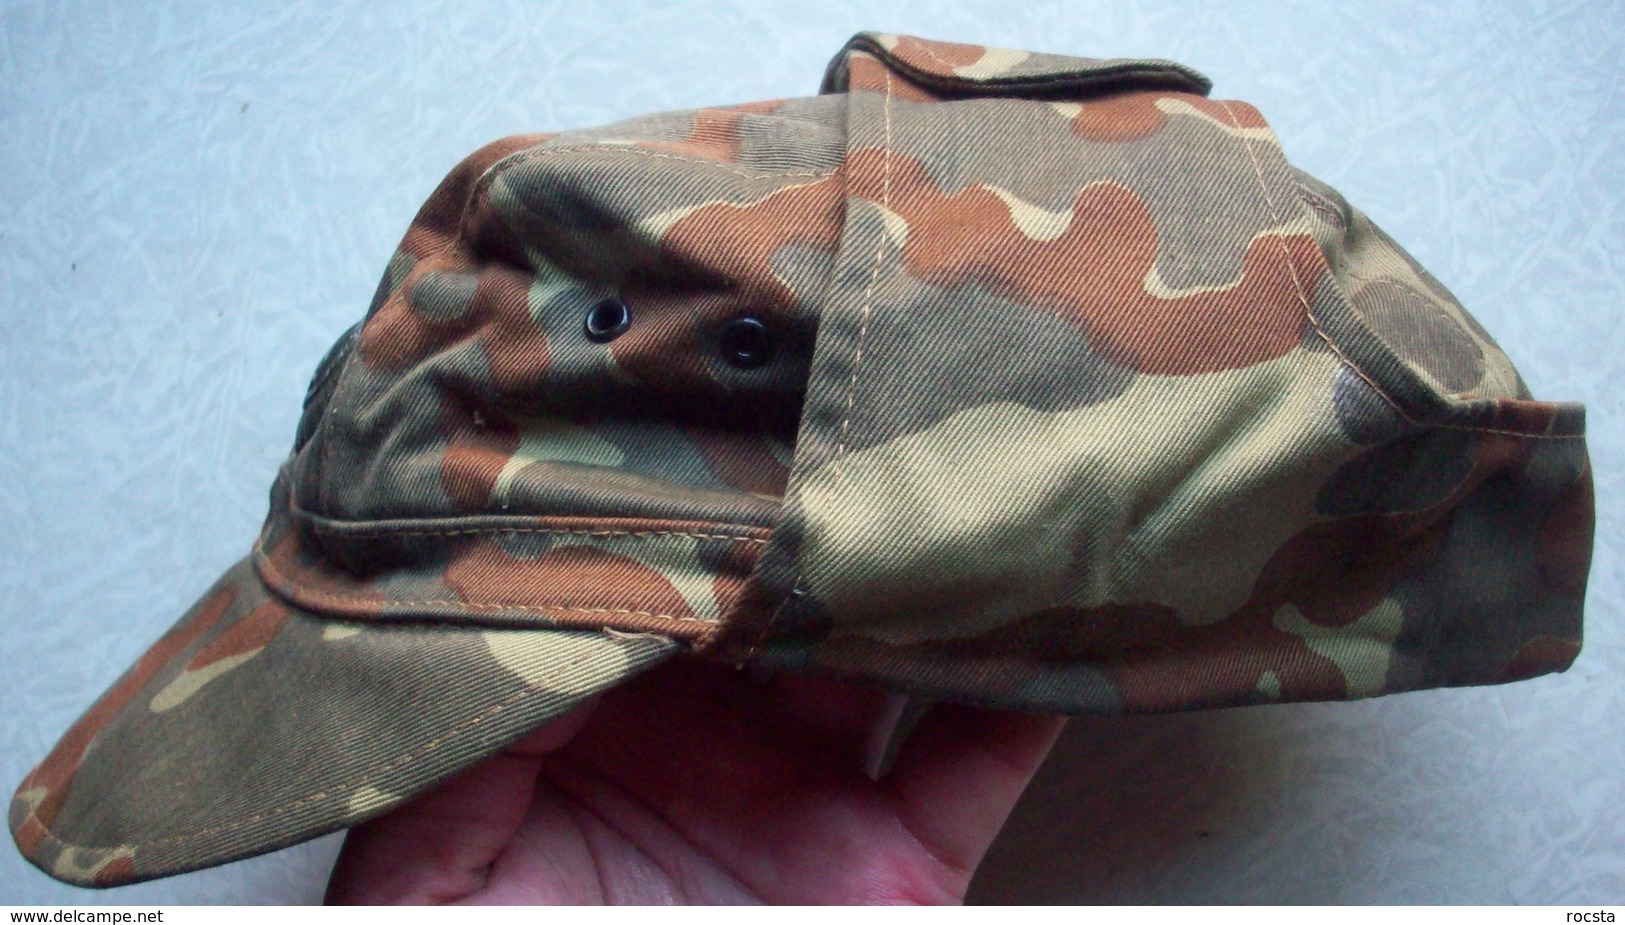 Ukrainian Army Ensign Camouflage Uniform Set (cap, Jacket, Pants) ATO - Size 46 - Uniform